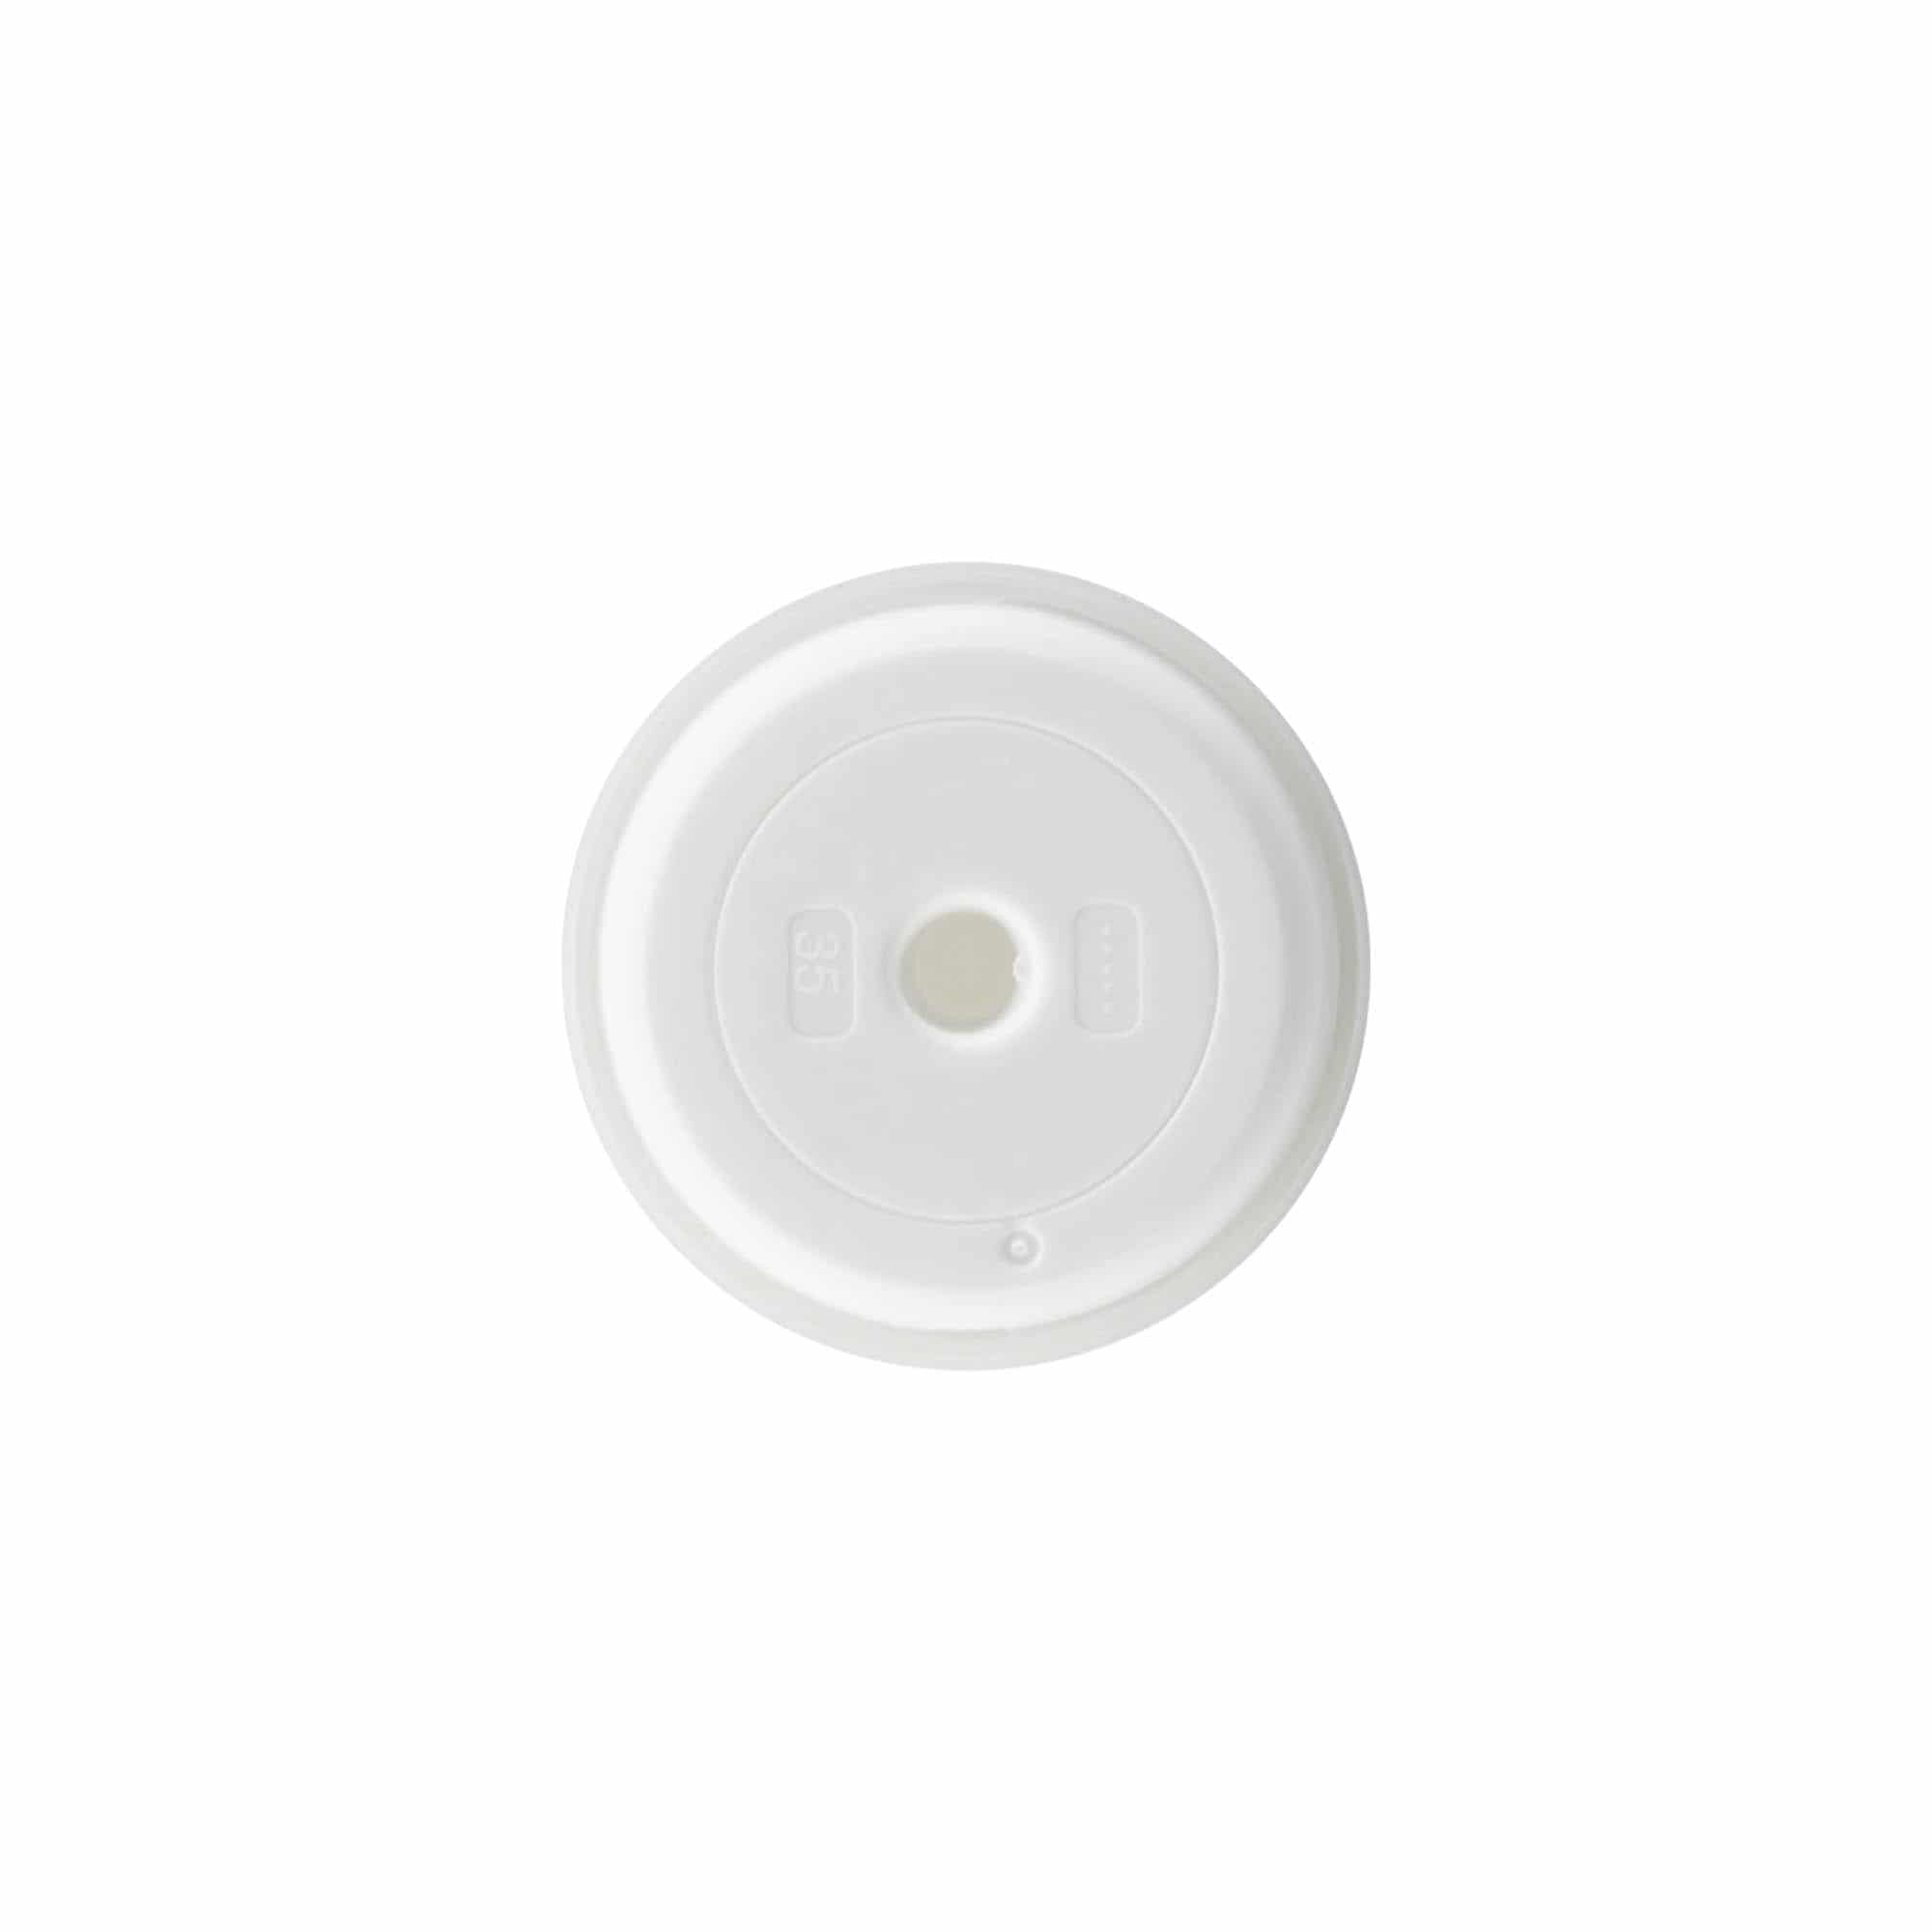 Pompkop voor Airless Dispenser 'Mezzo', PP-kunststof, wit